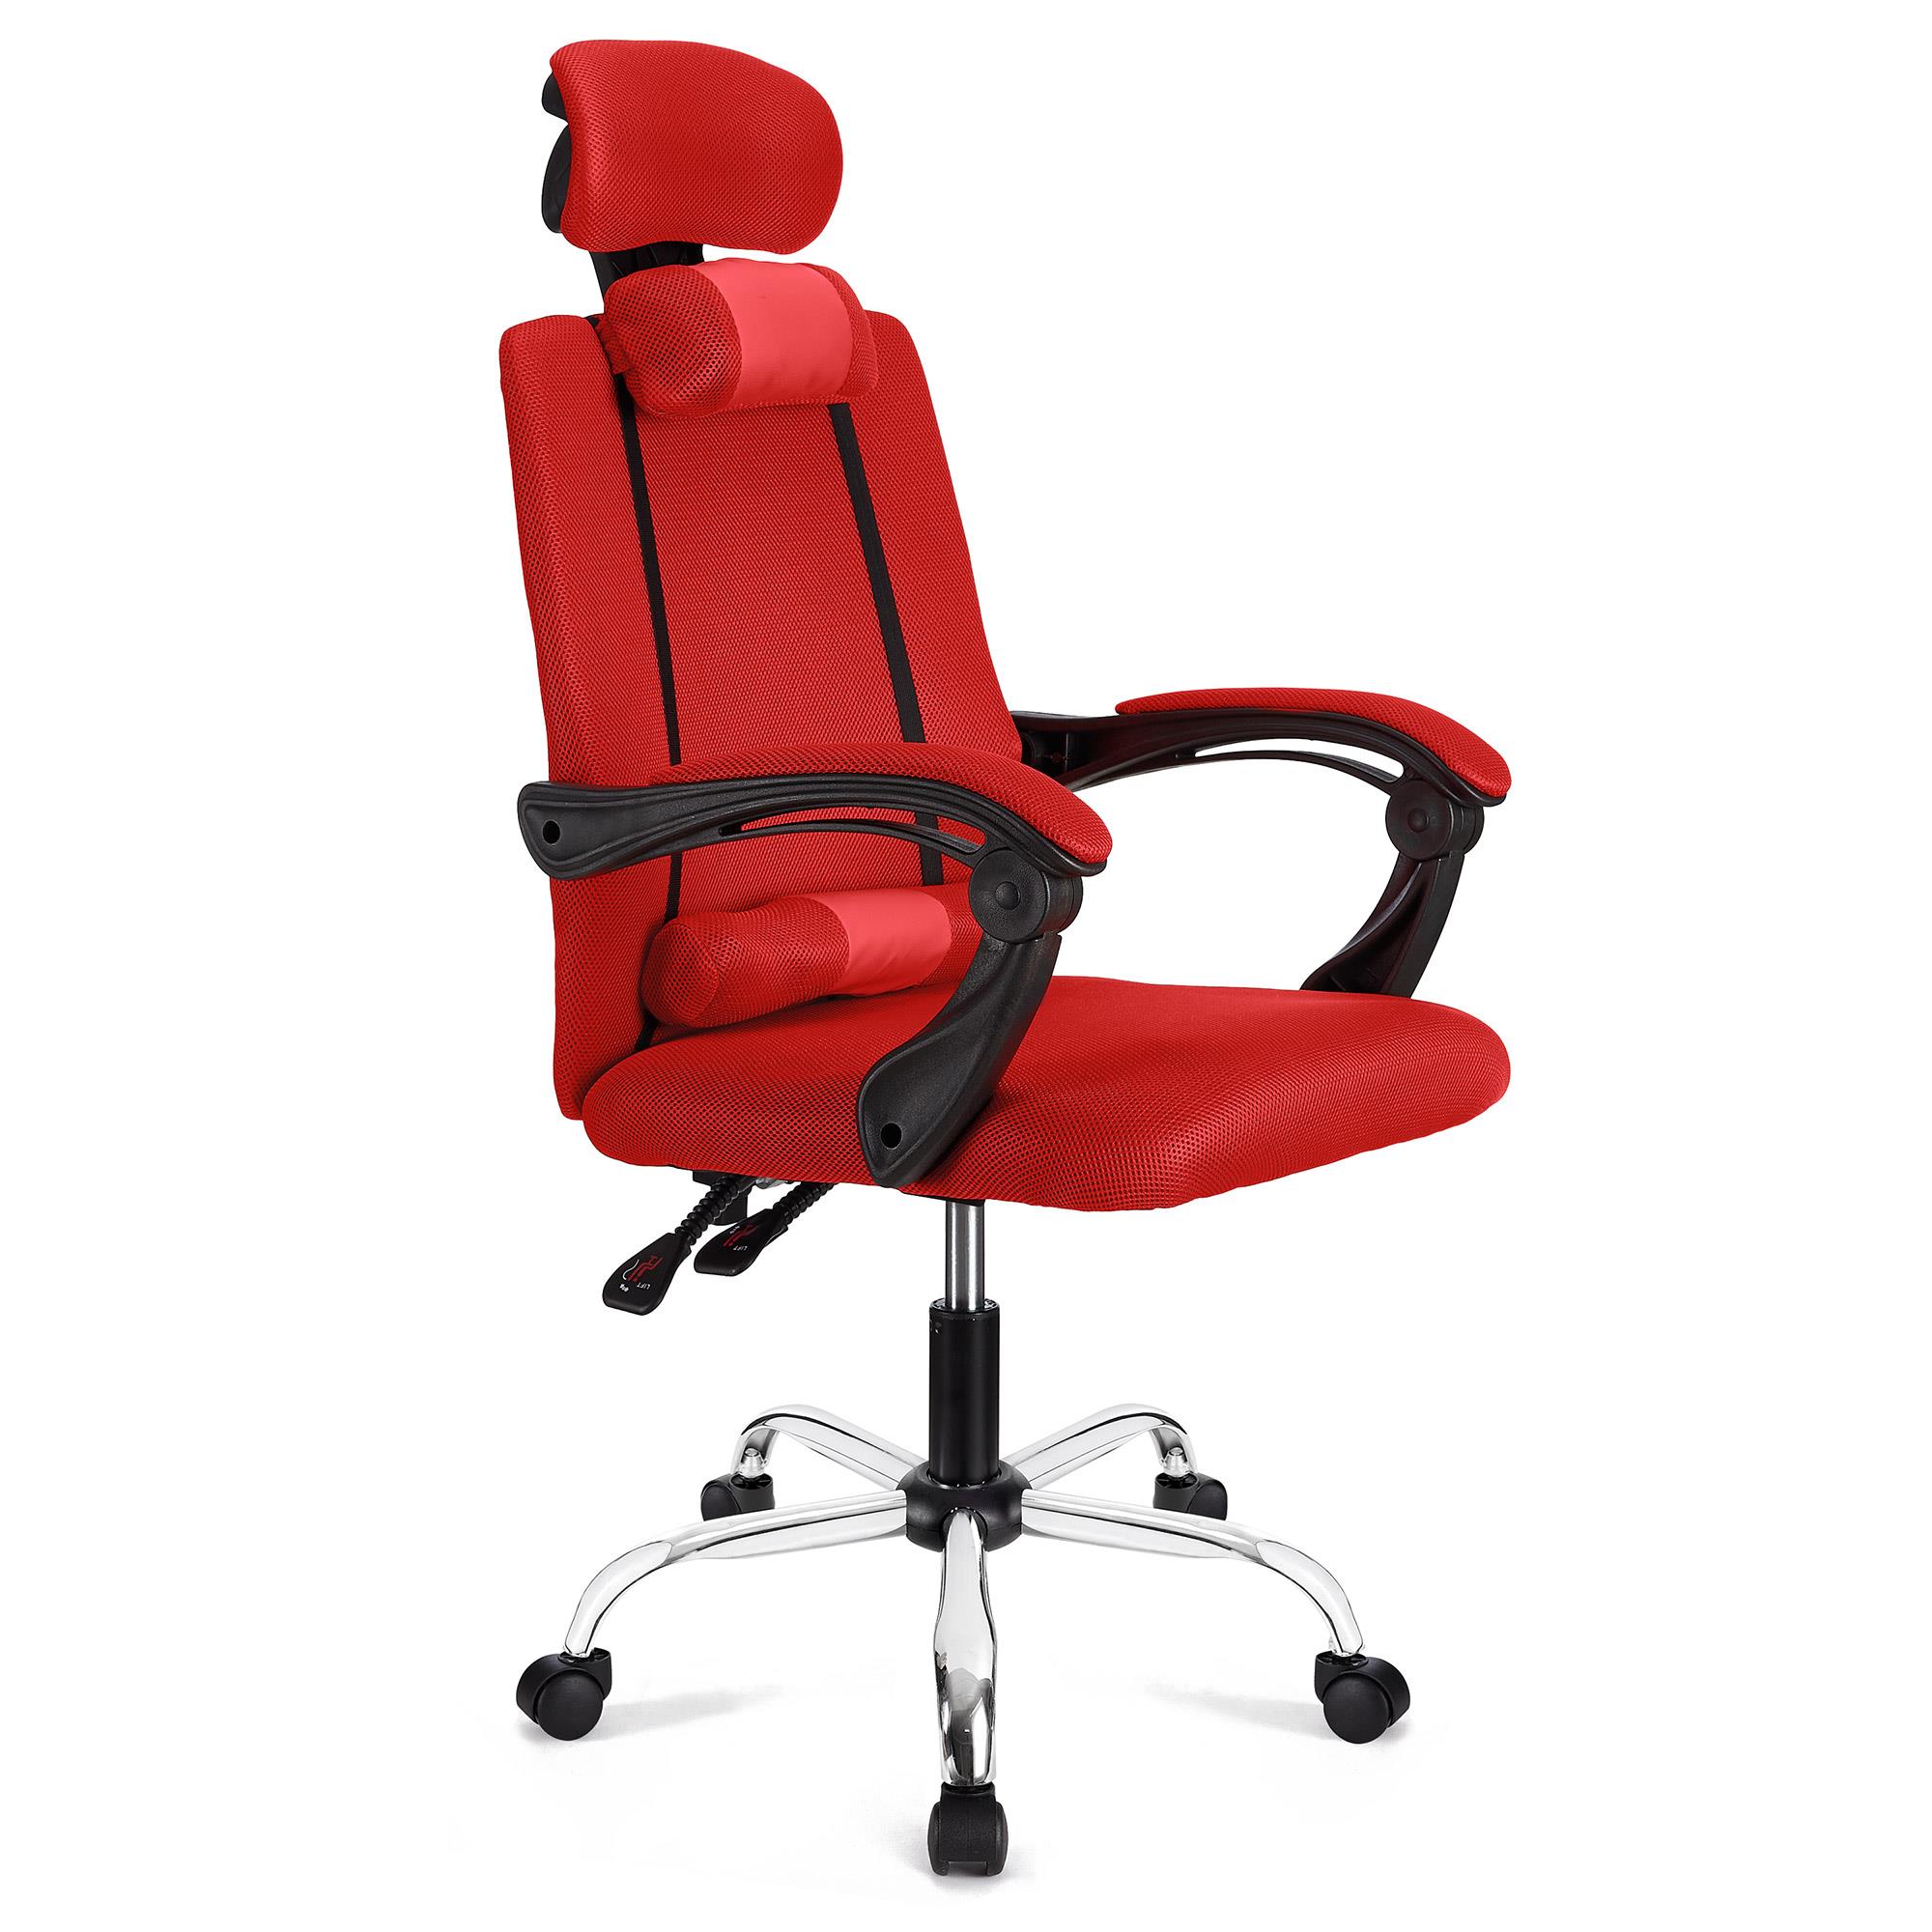 Ergonomischer Bürostuhl FABIO, neigbar, mit Nacken- und Lordosekissen, atmungsaktiver Netzstoffbezug, Farbe Rot